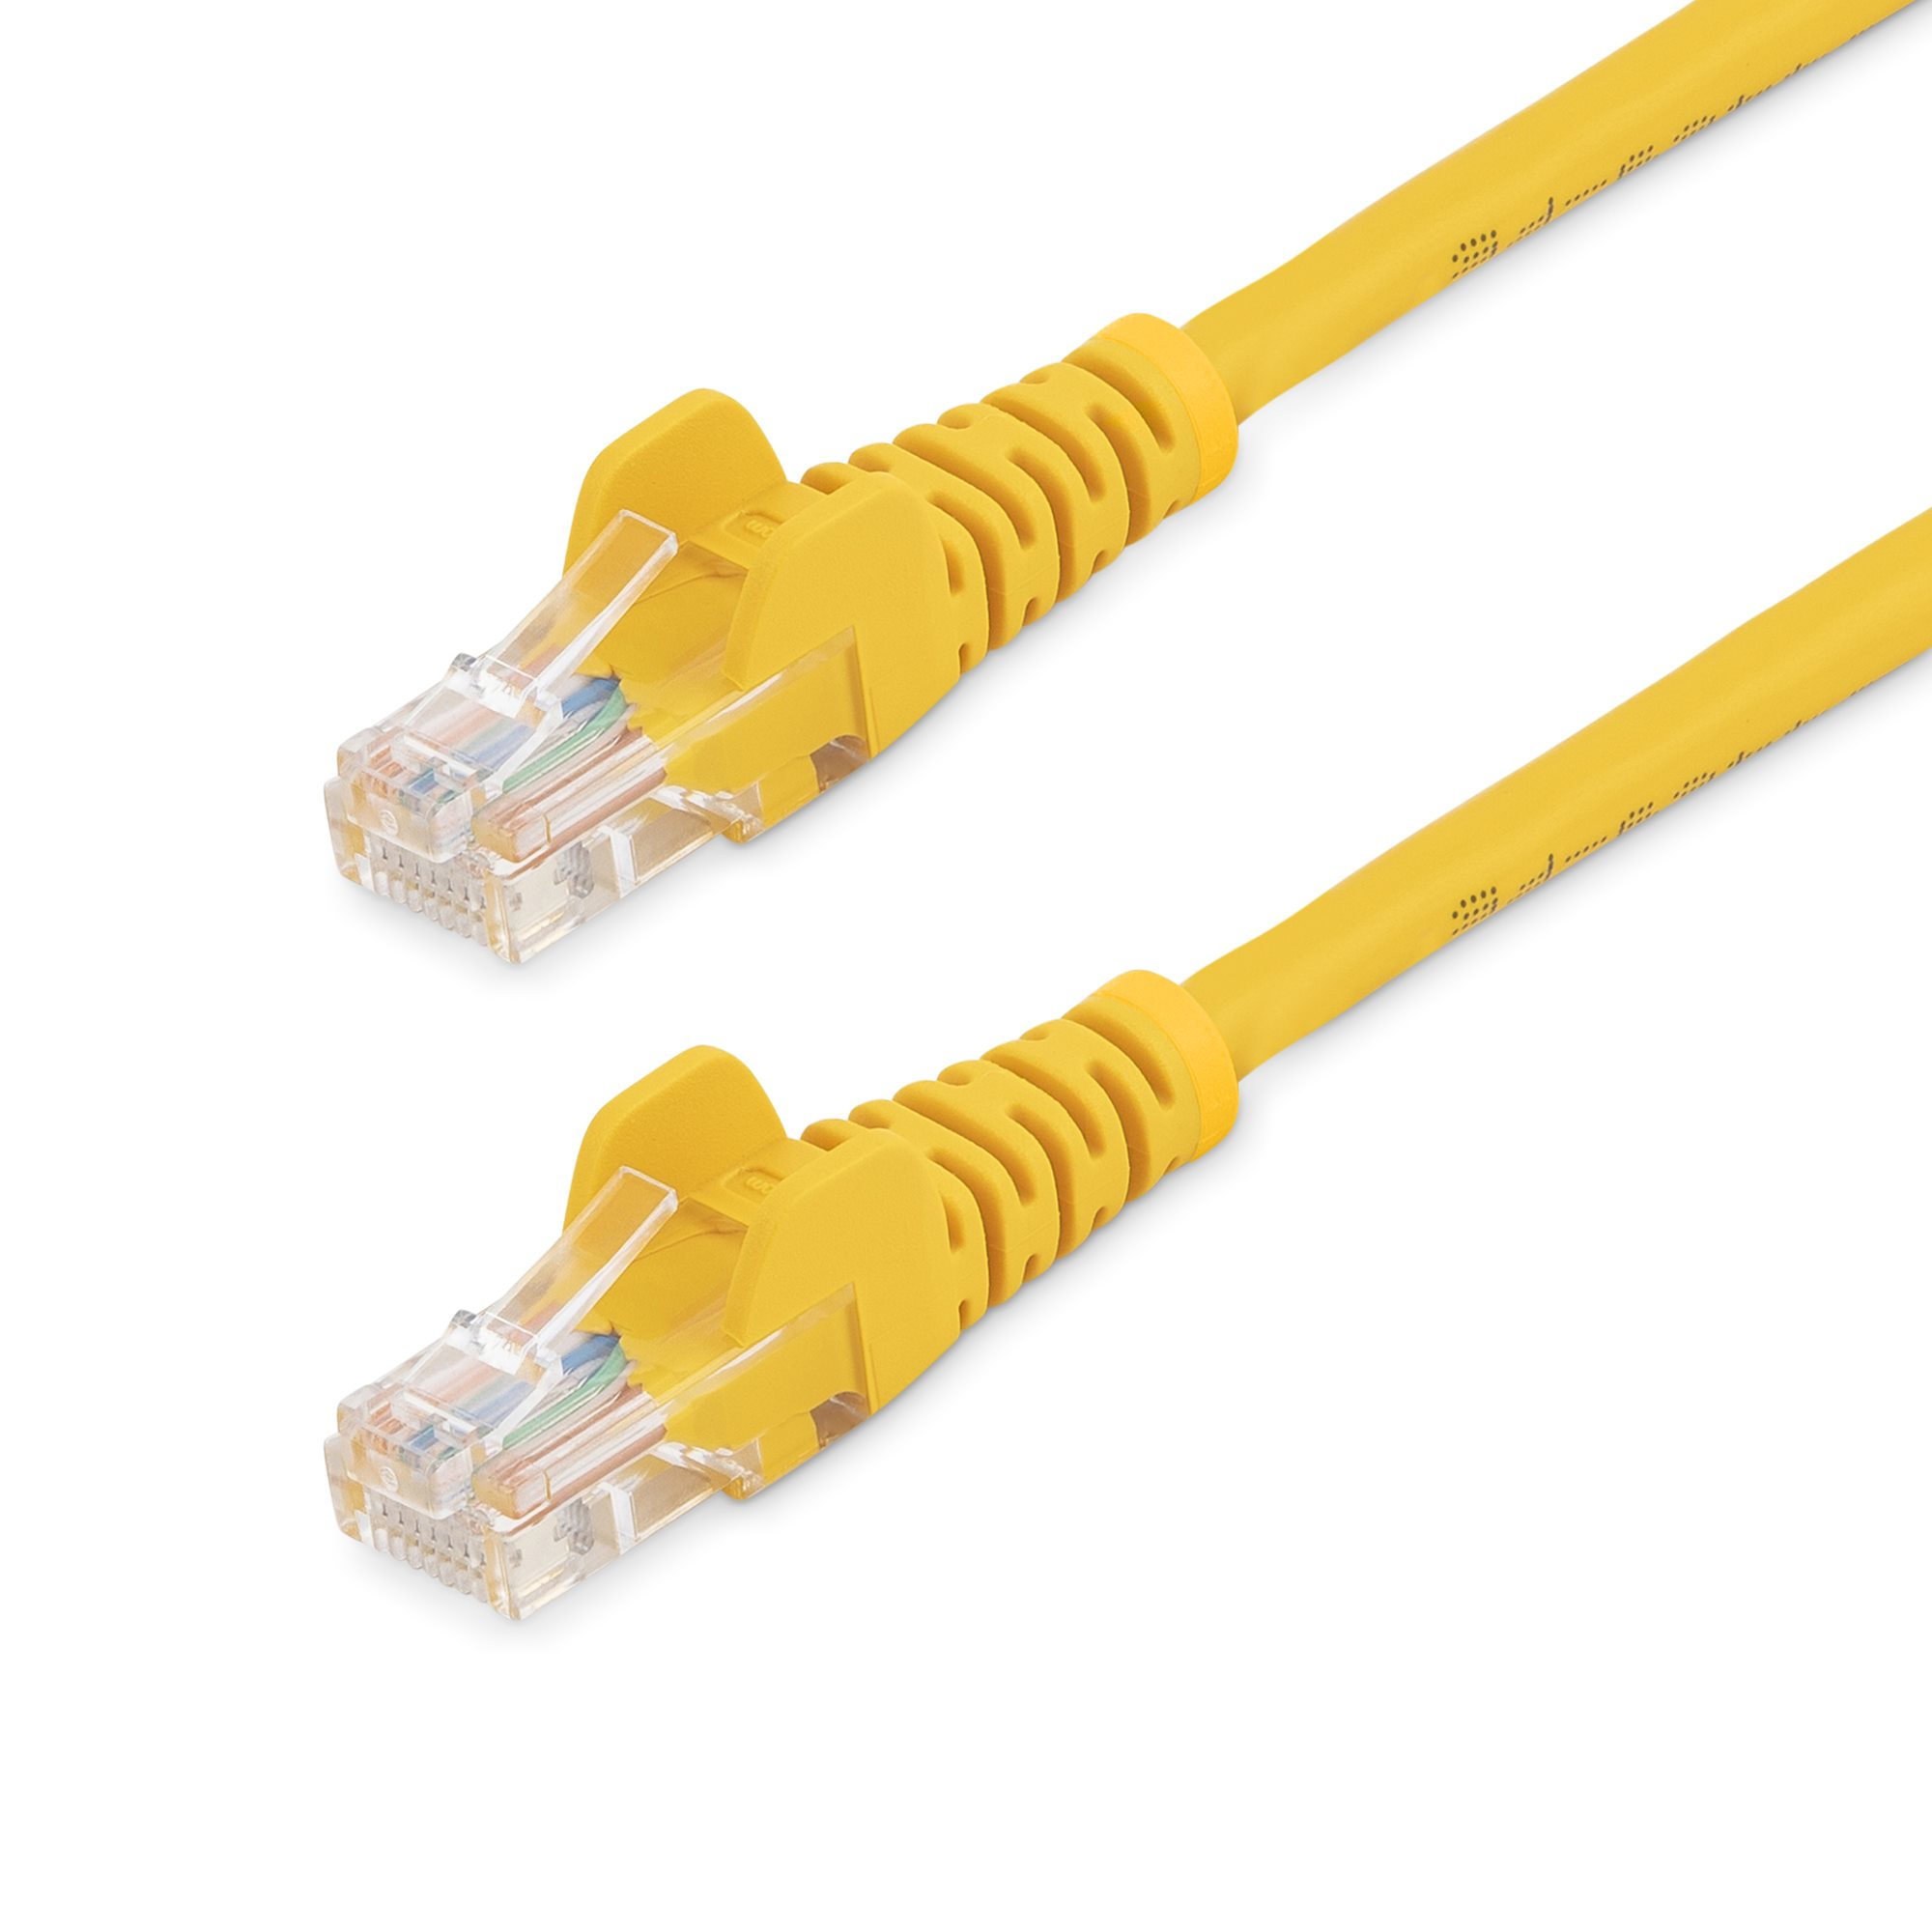 StarTech.com 5m Cat5e Ethernet Netzwerkkabel Snagless mit RJ45 - Cat 5e UTP Kabel - Gelb - Netzwerkkabel - RJ-45 (M)